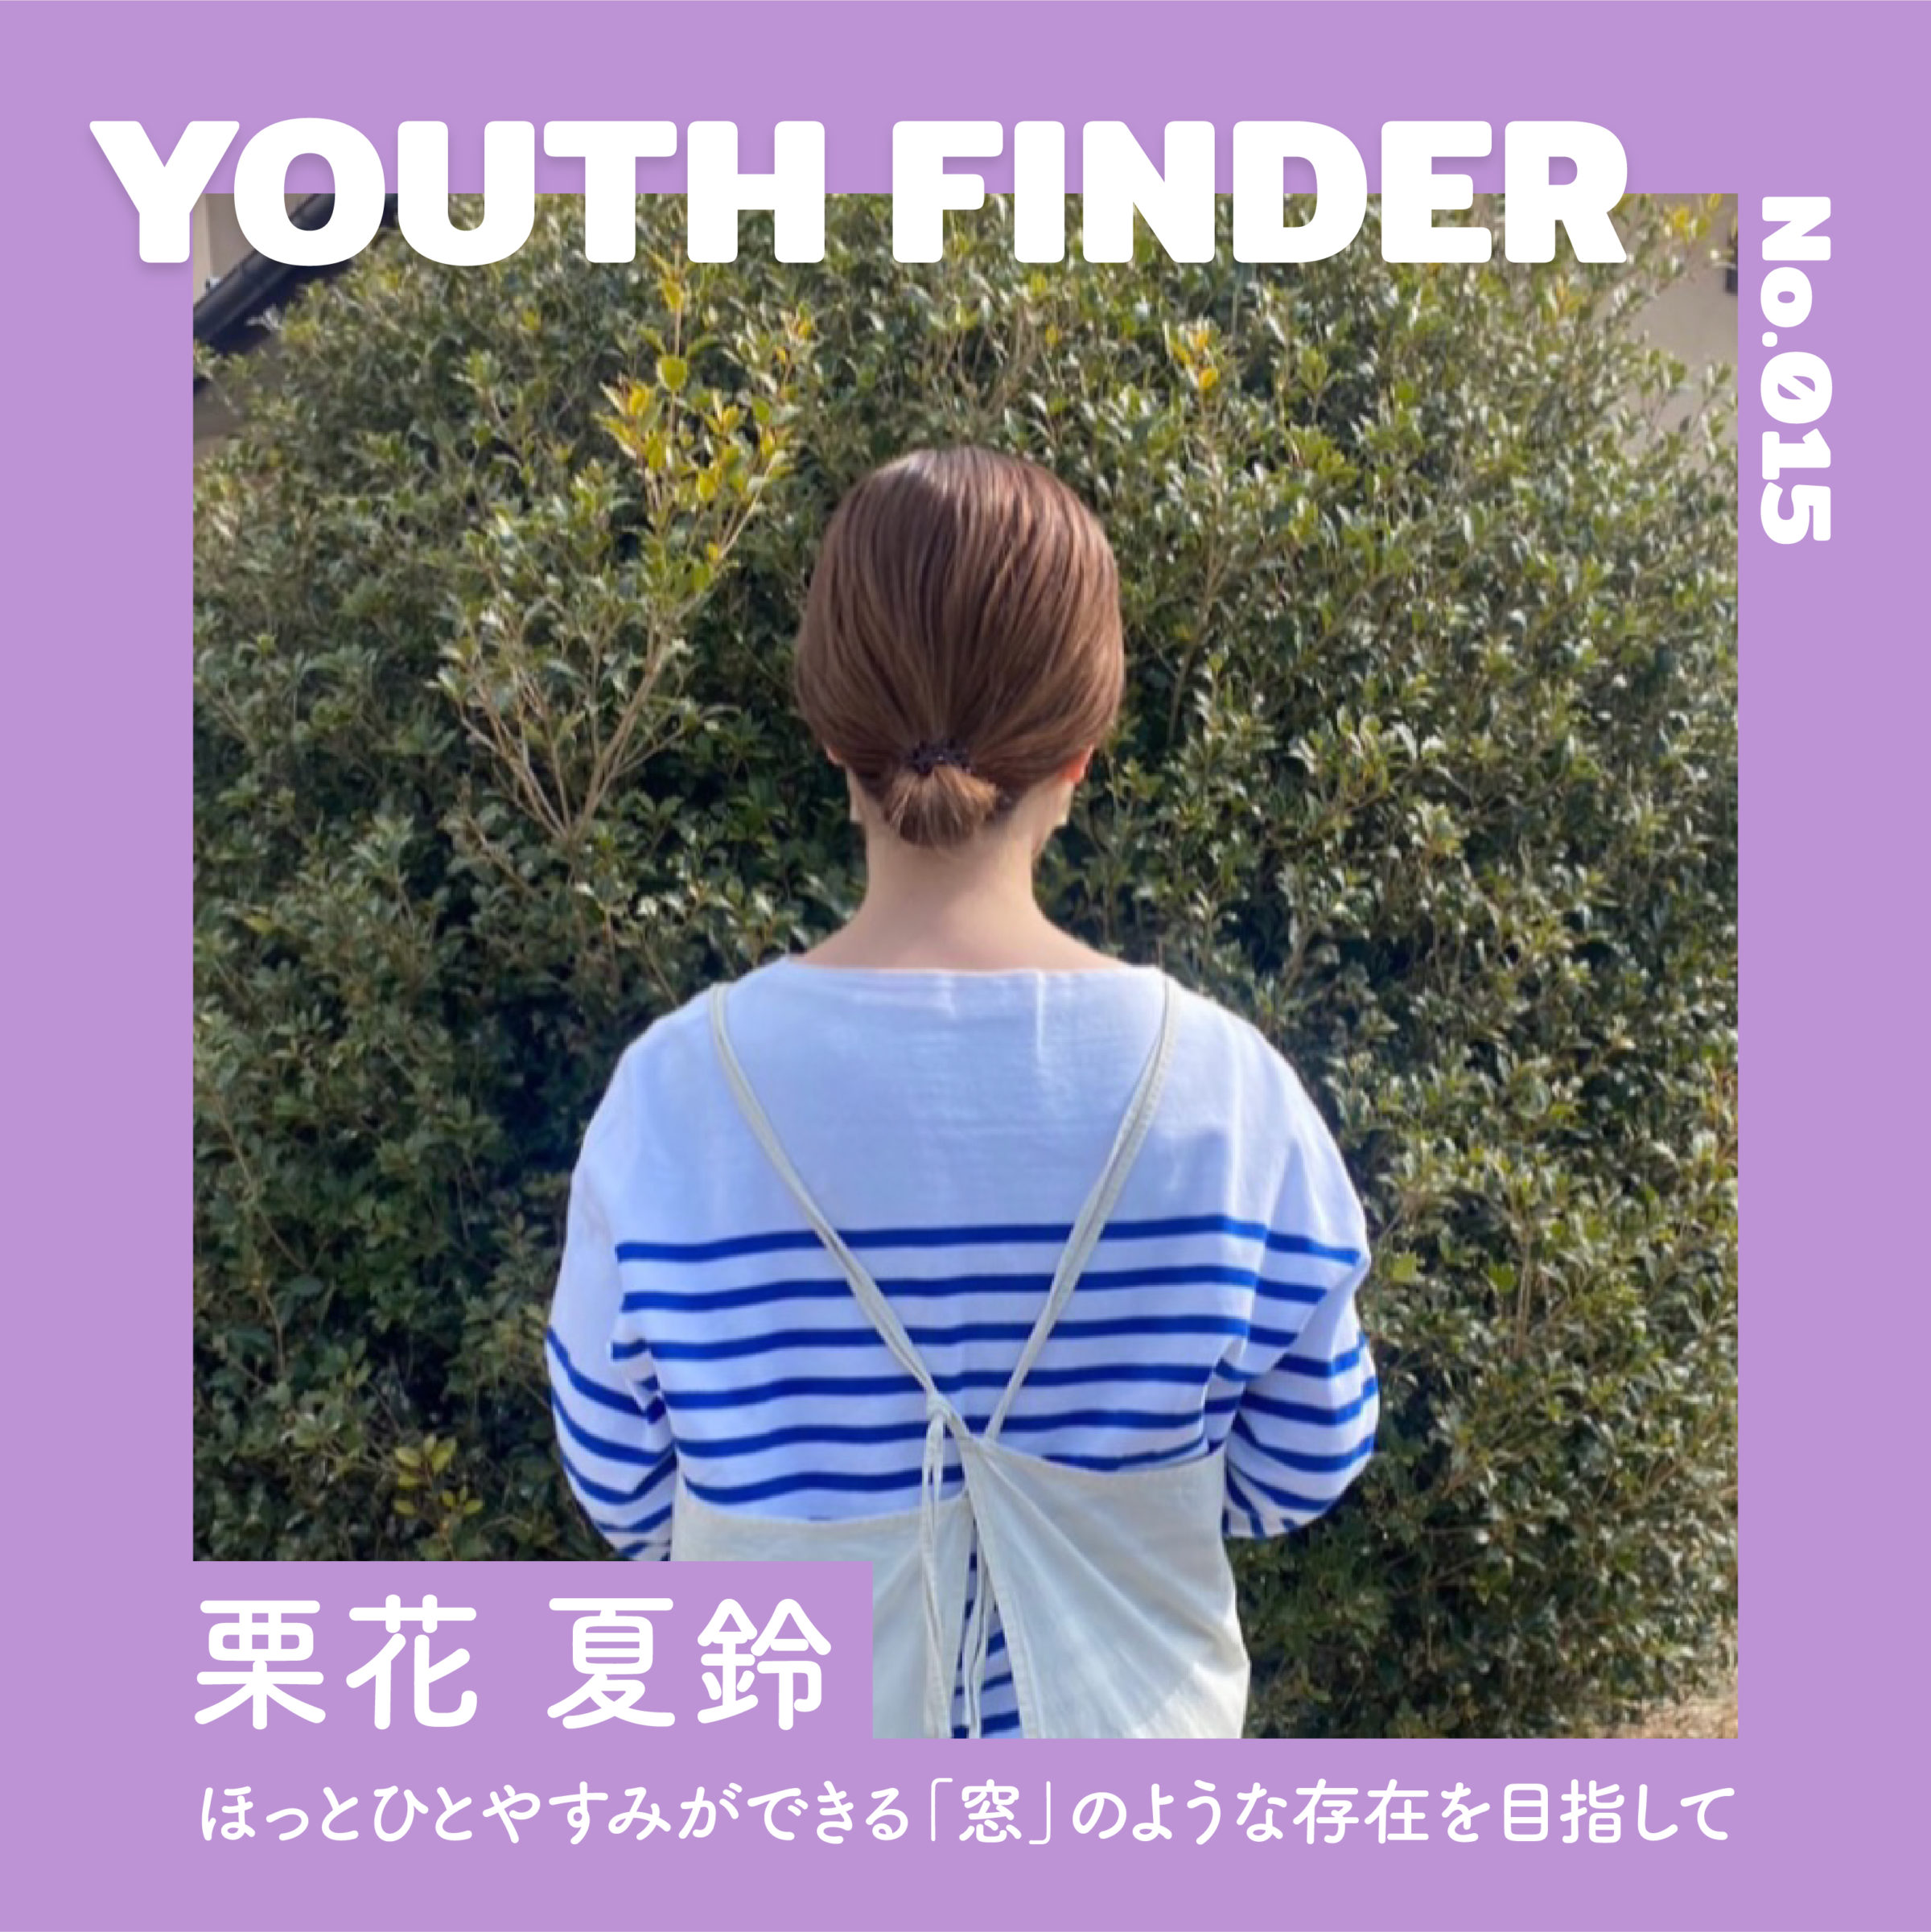 ほっとひとやすみができる「窓」のような存在を目指して　 栗花 夏鈴さん【Youth Finder】の画像